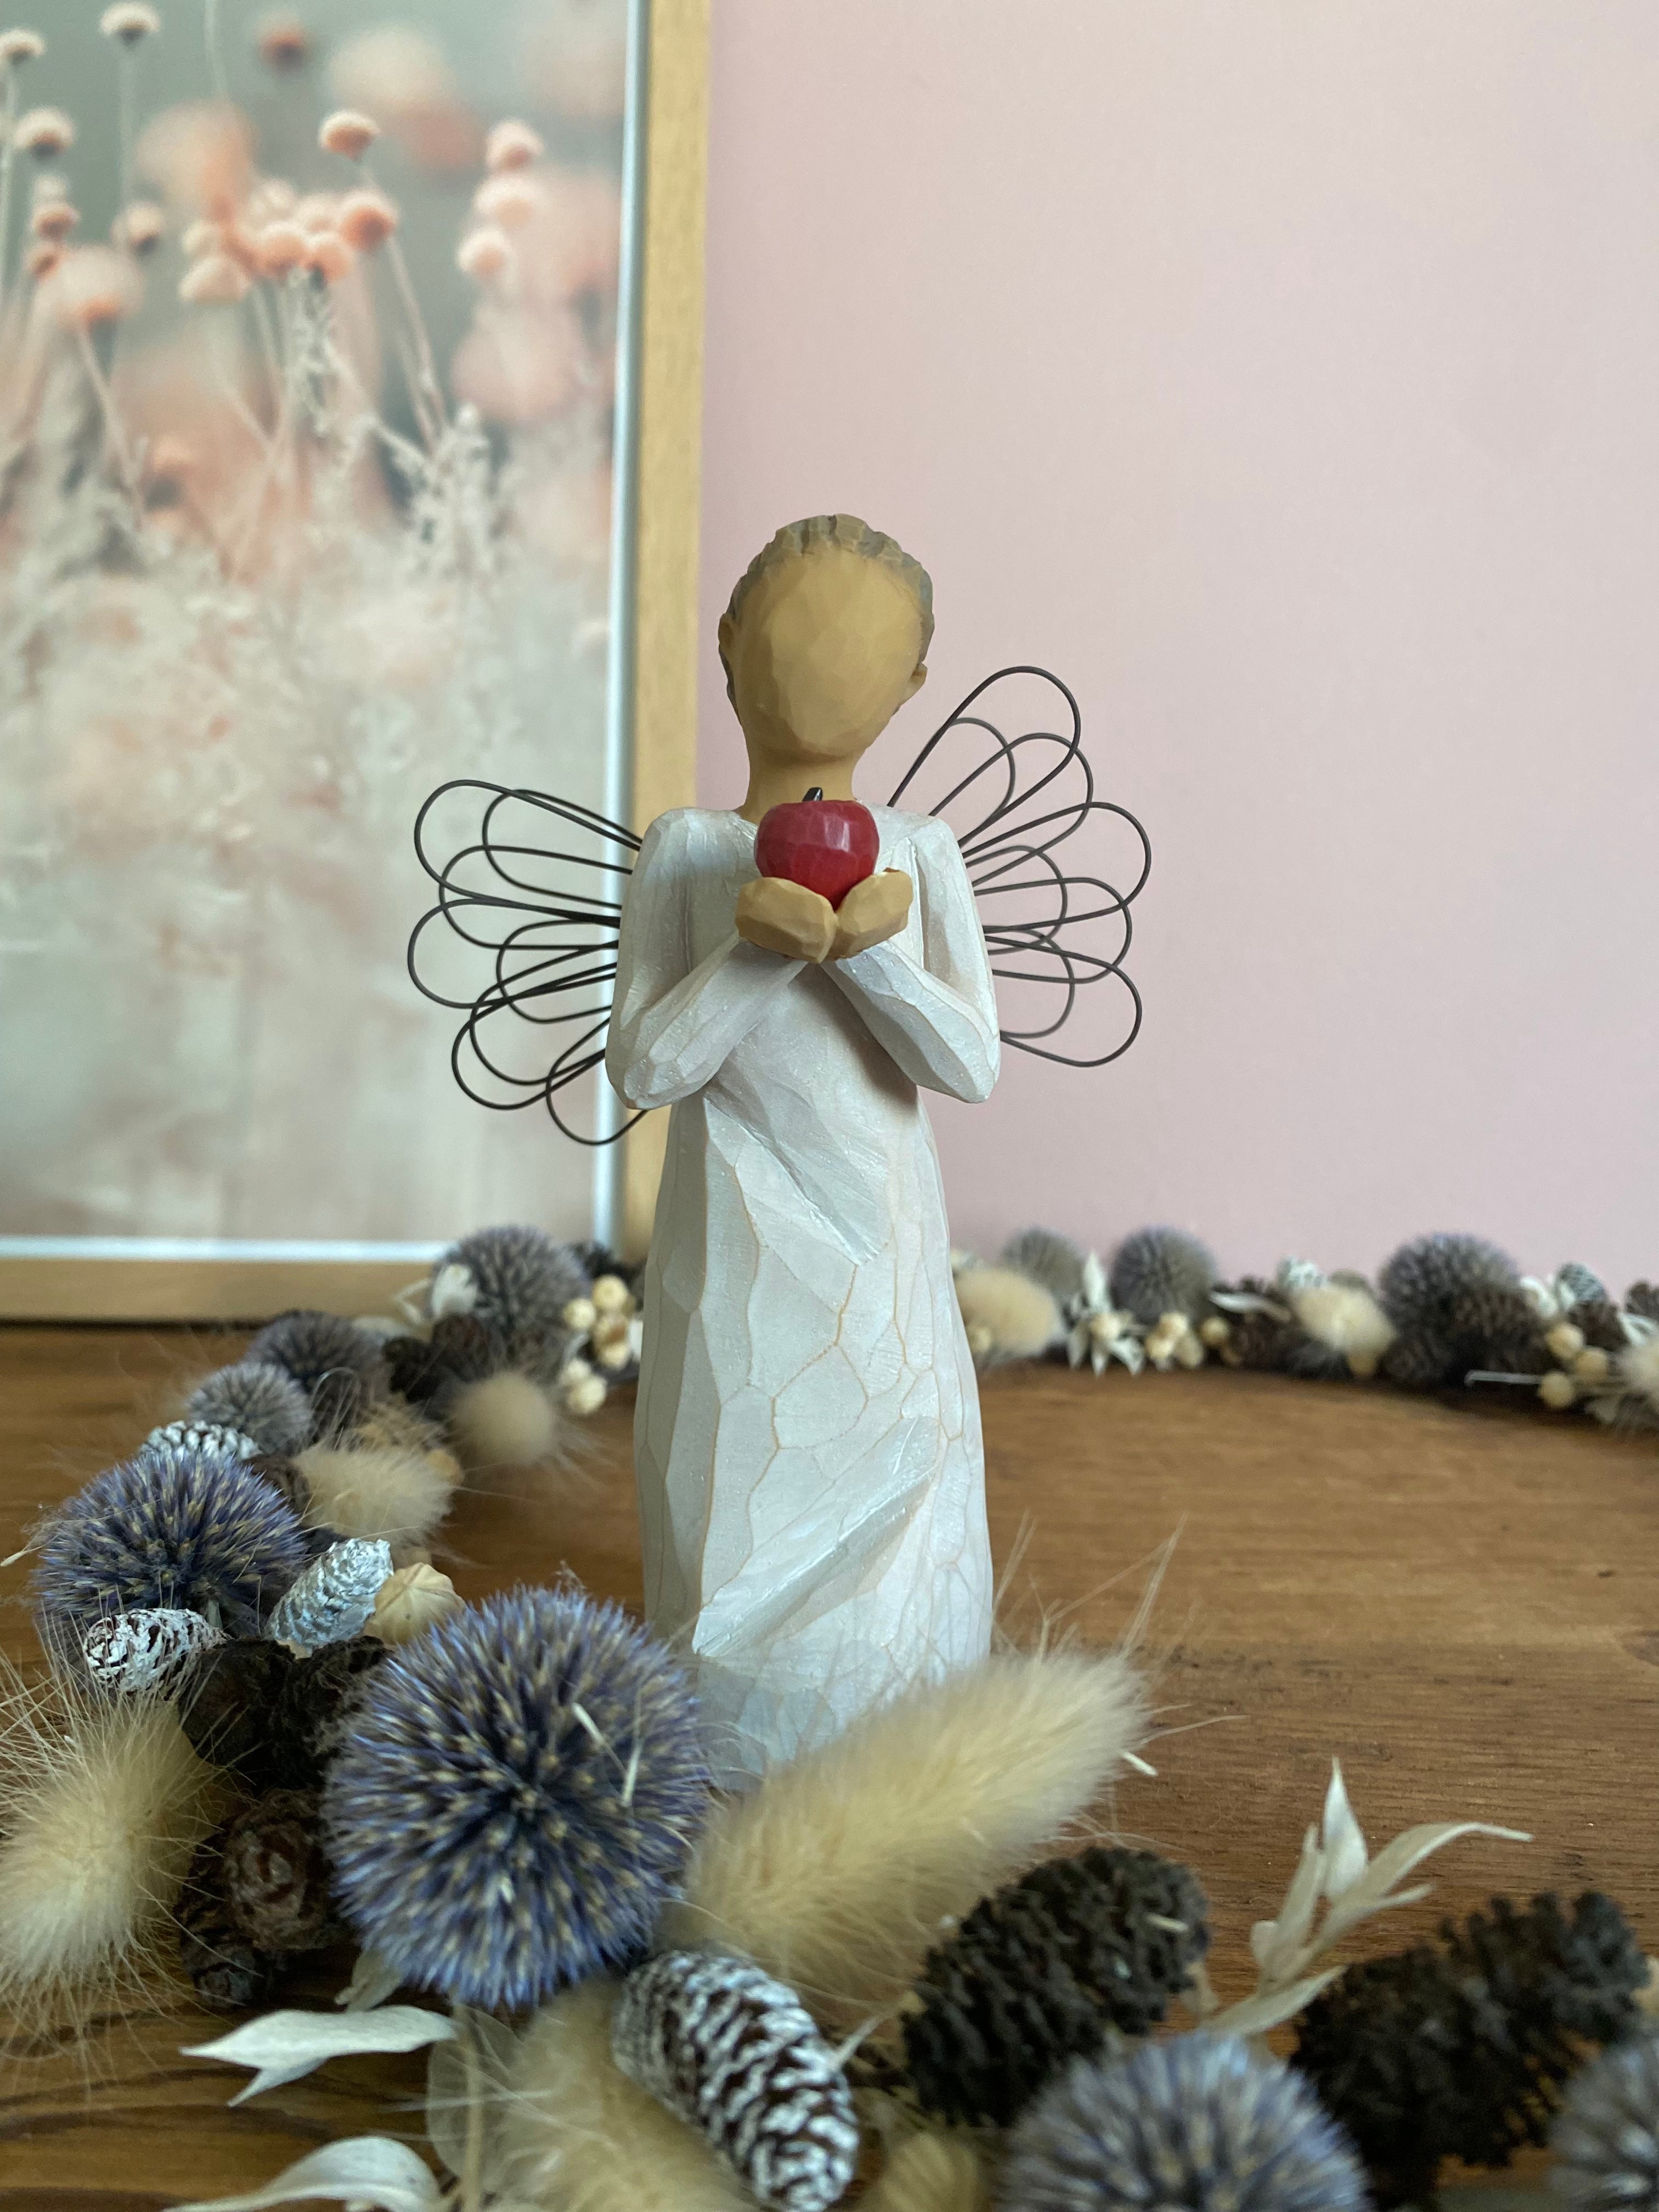 "Figurine Willow Tree - Tu es le meilleur ! - Merci de faire la différence. Création de Susan Lordi en résine, peinte à la main. Expression d'appréciation et de gratitude. Objet de décoration."